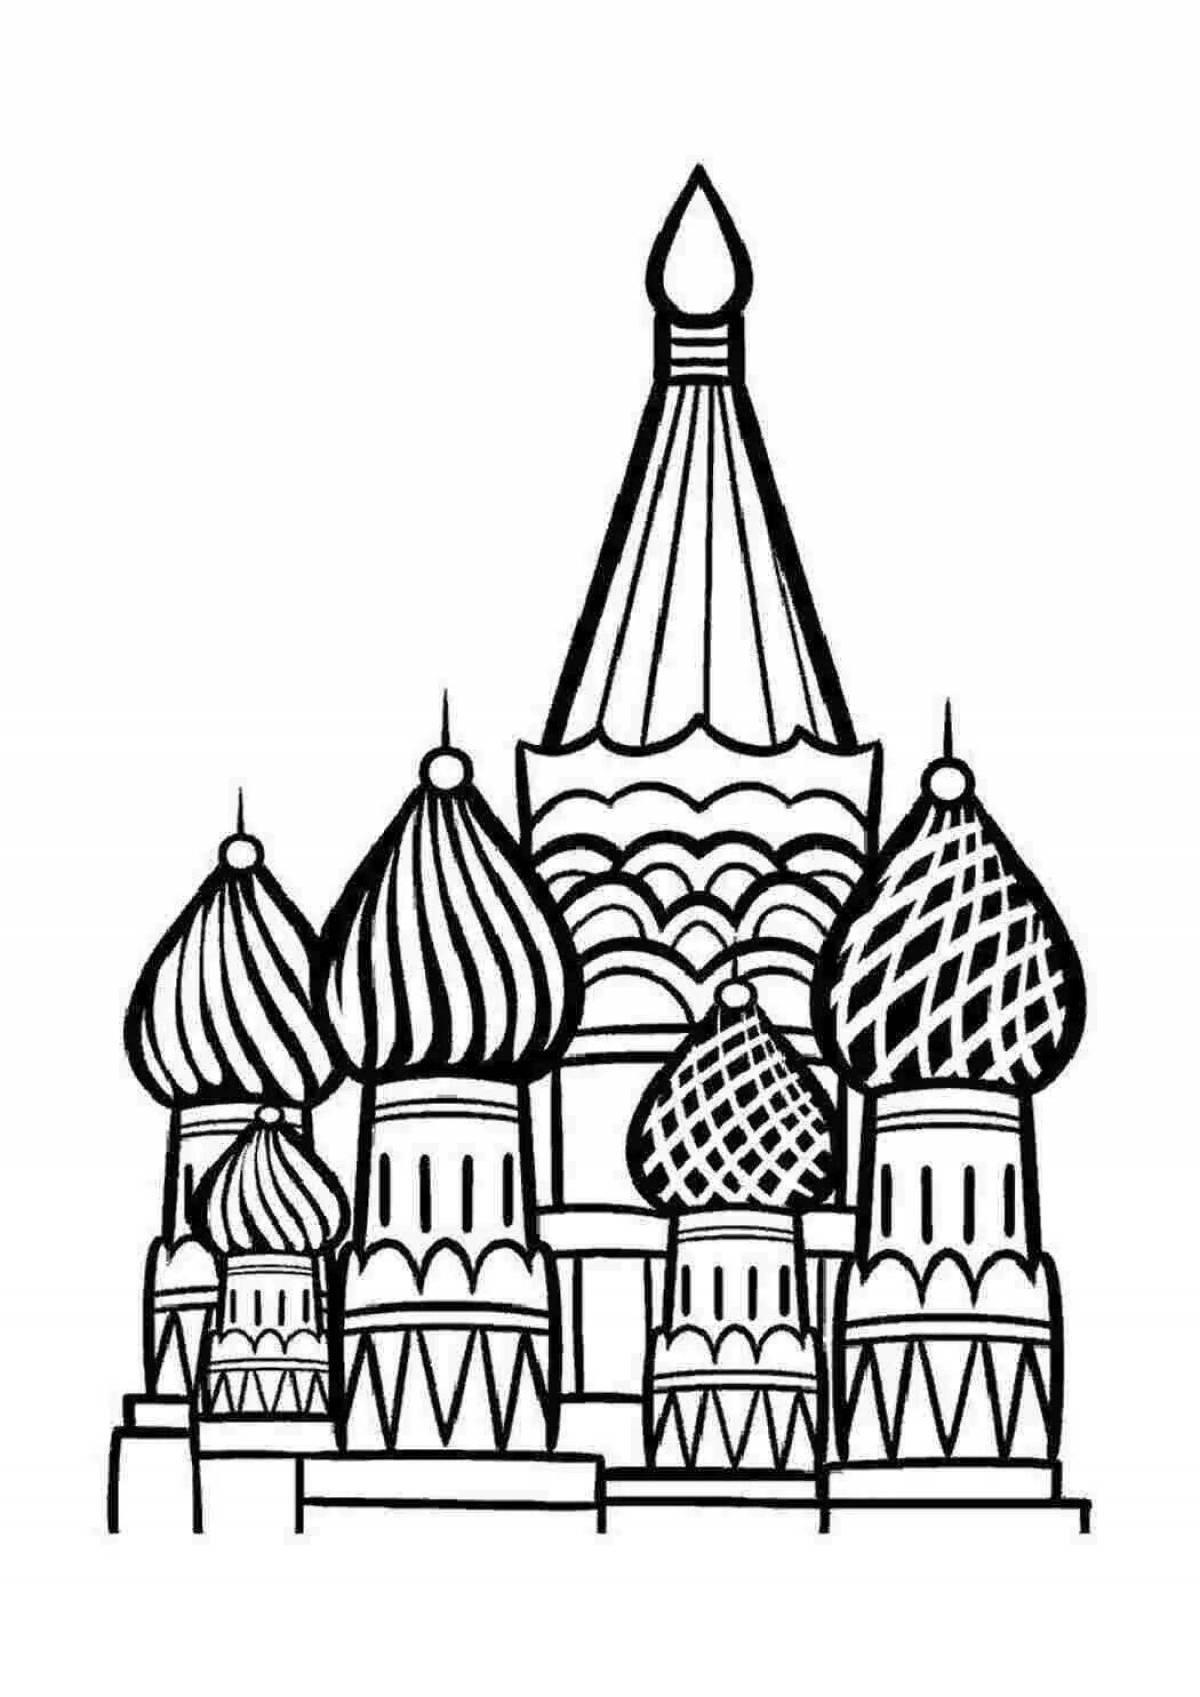 Radiant Kremlin coloring pages for children